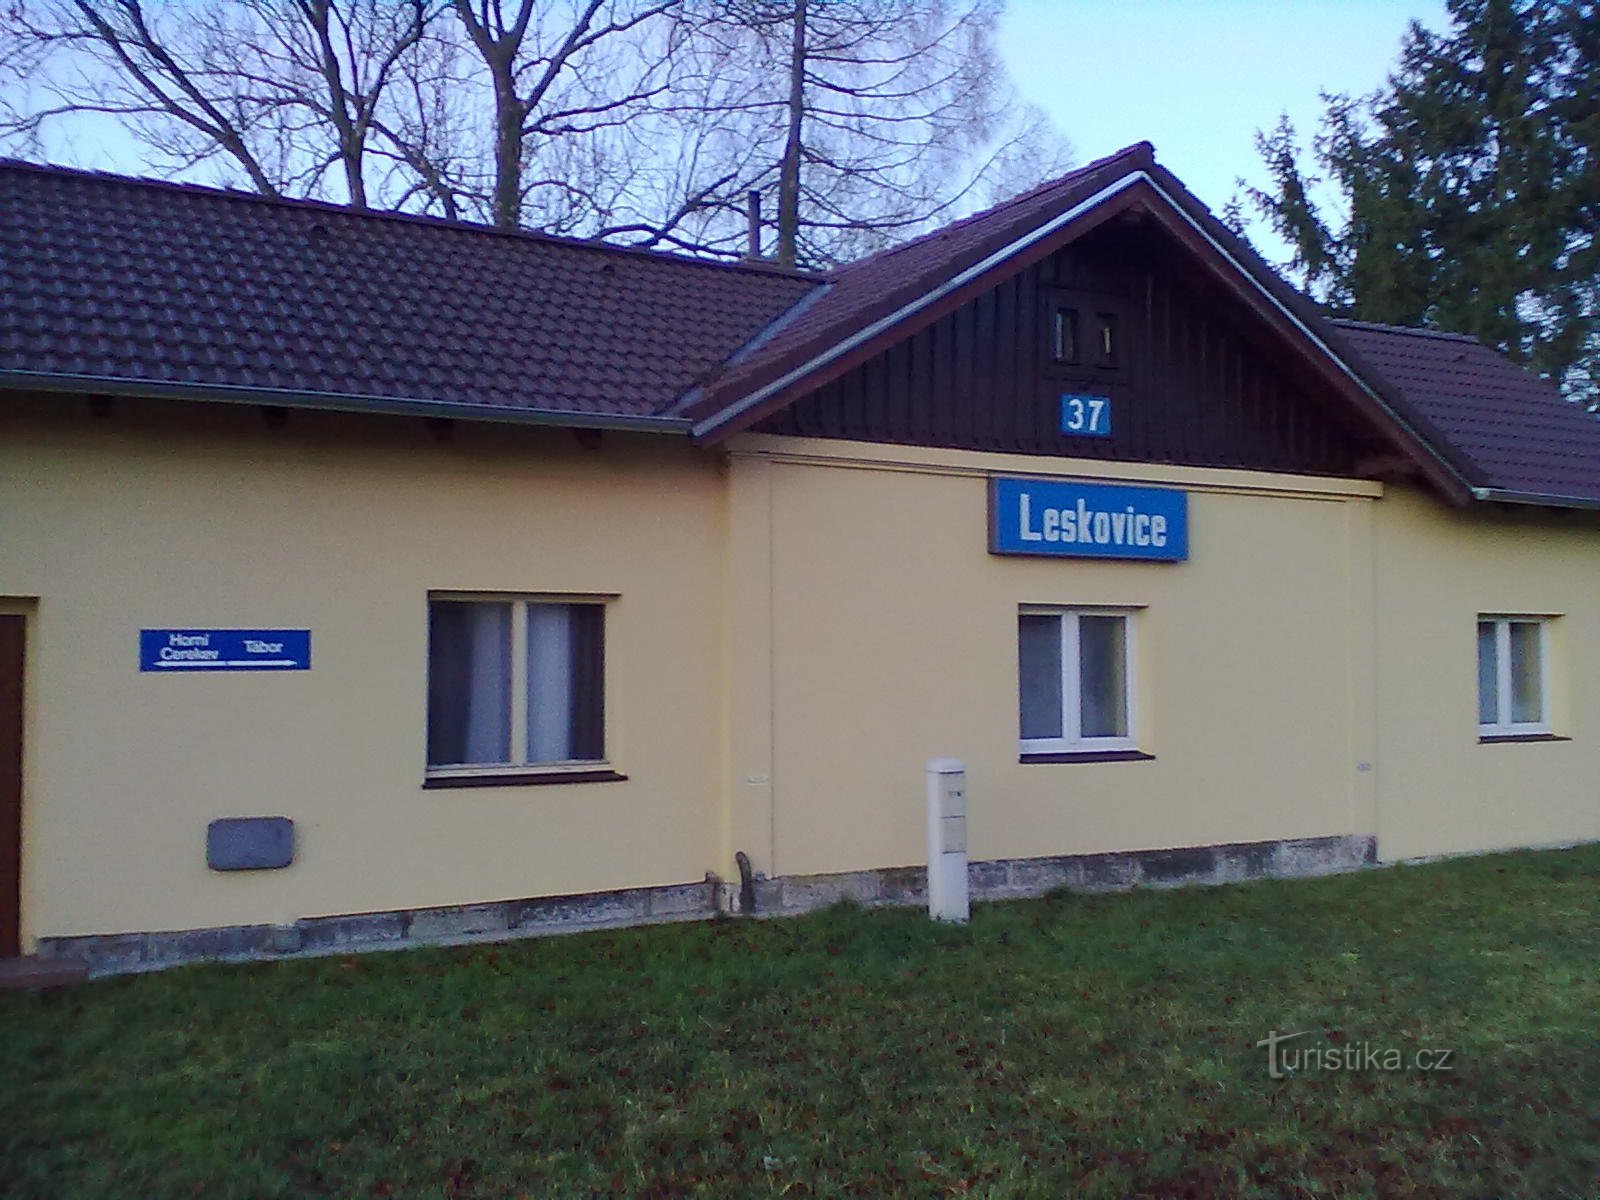 2. Bahnhaltestelle in Leskovice.